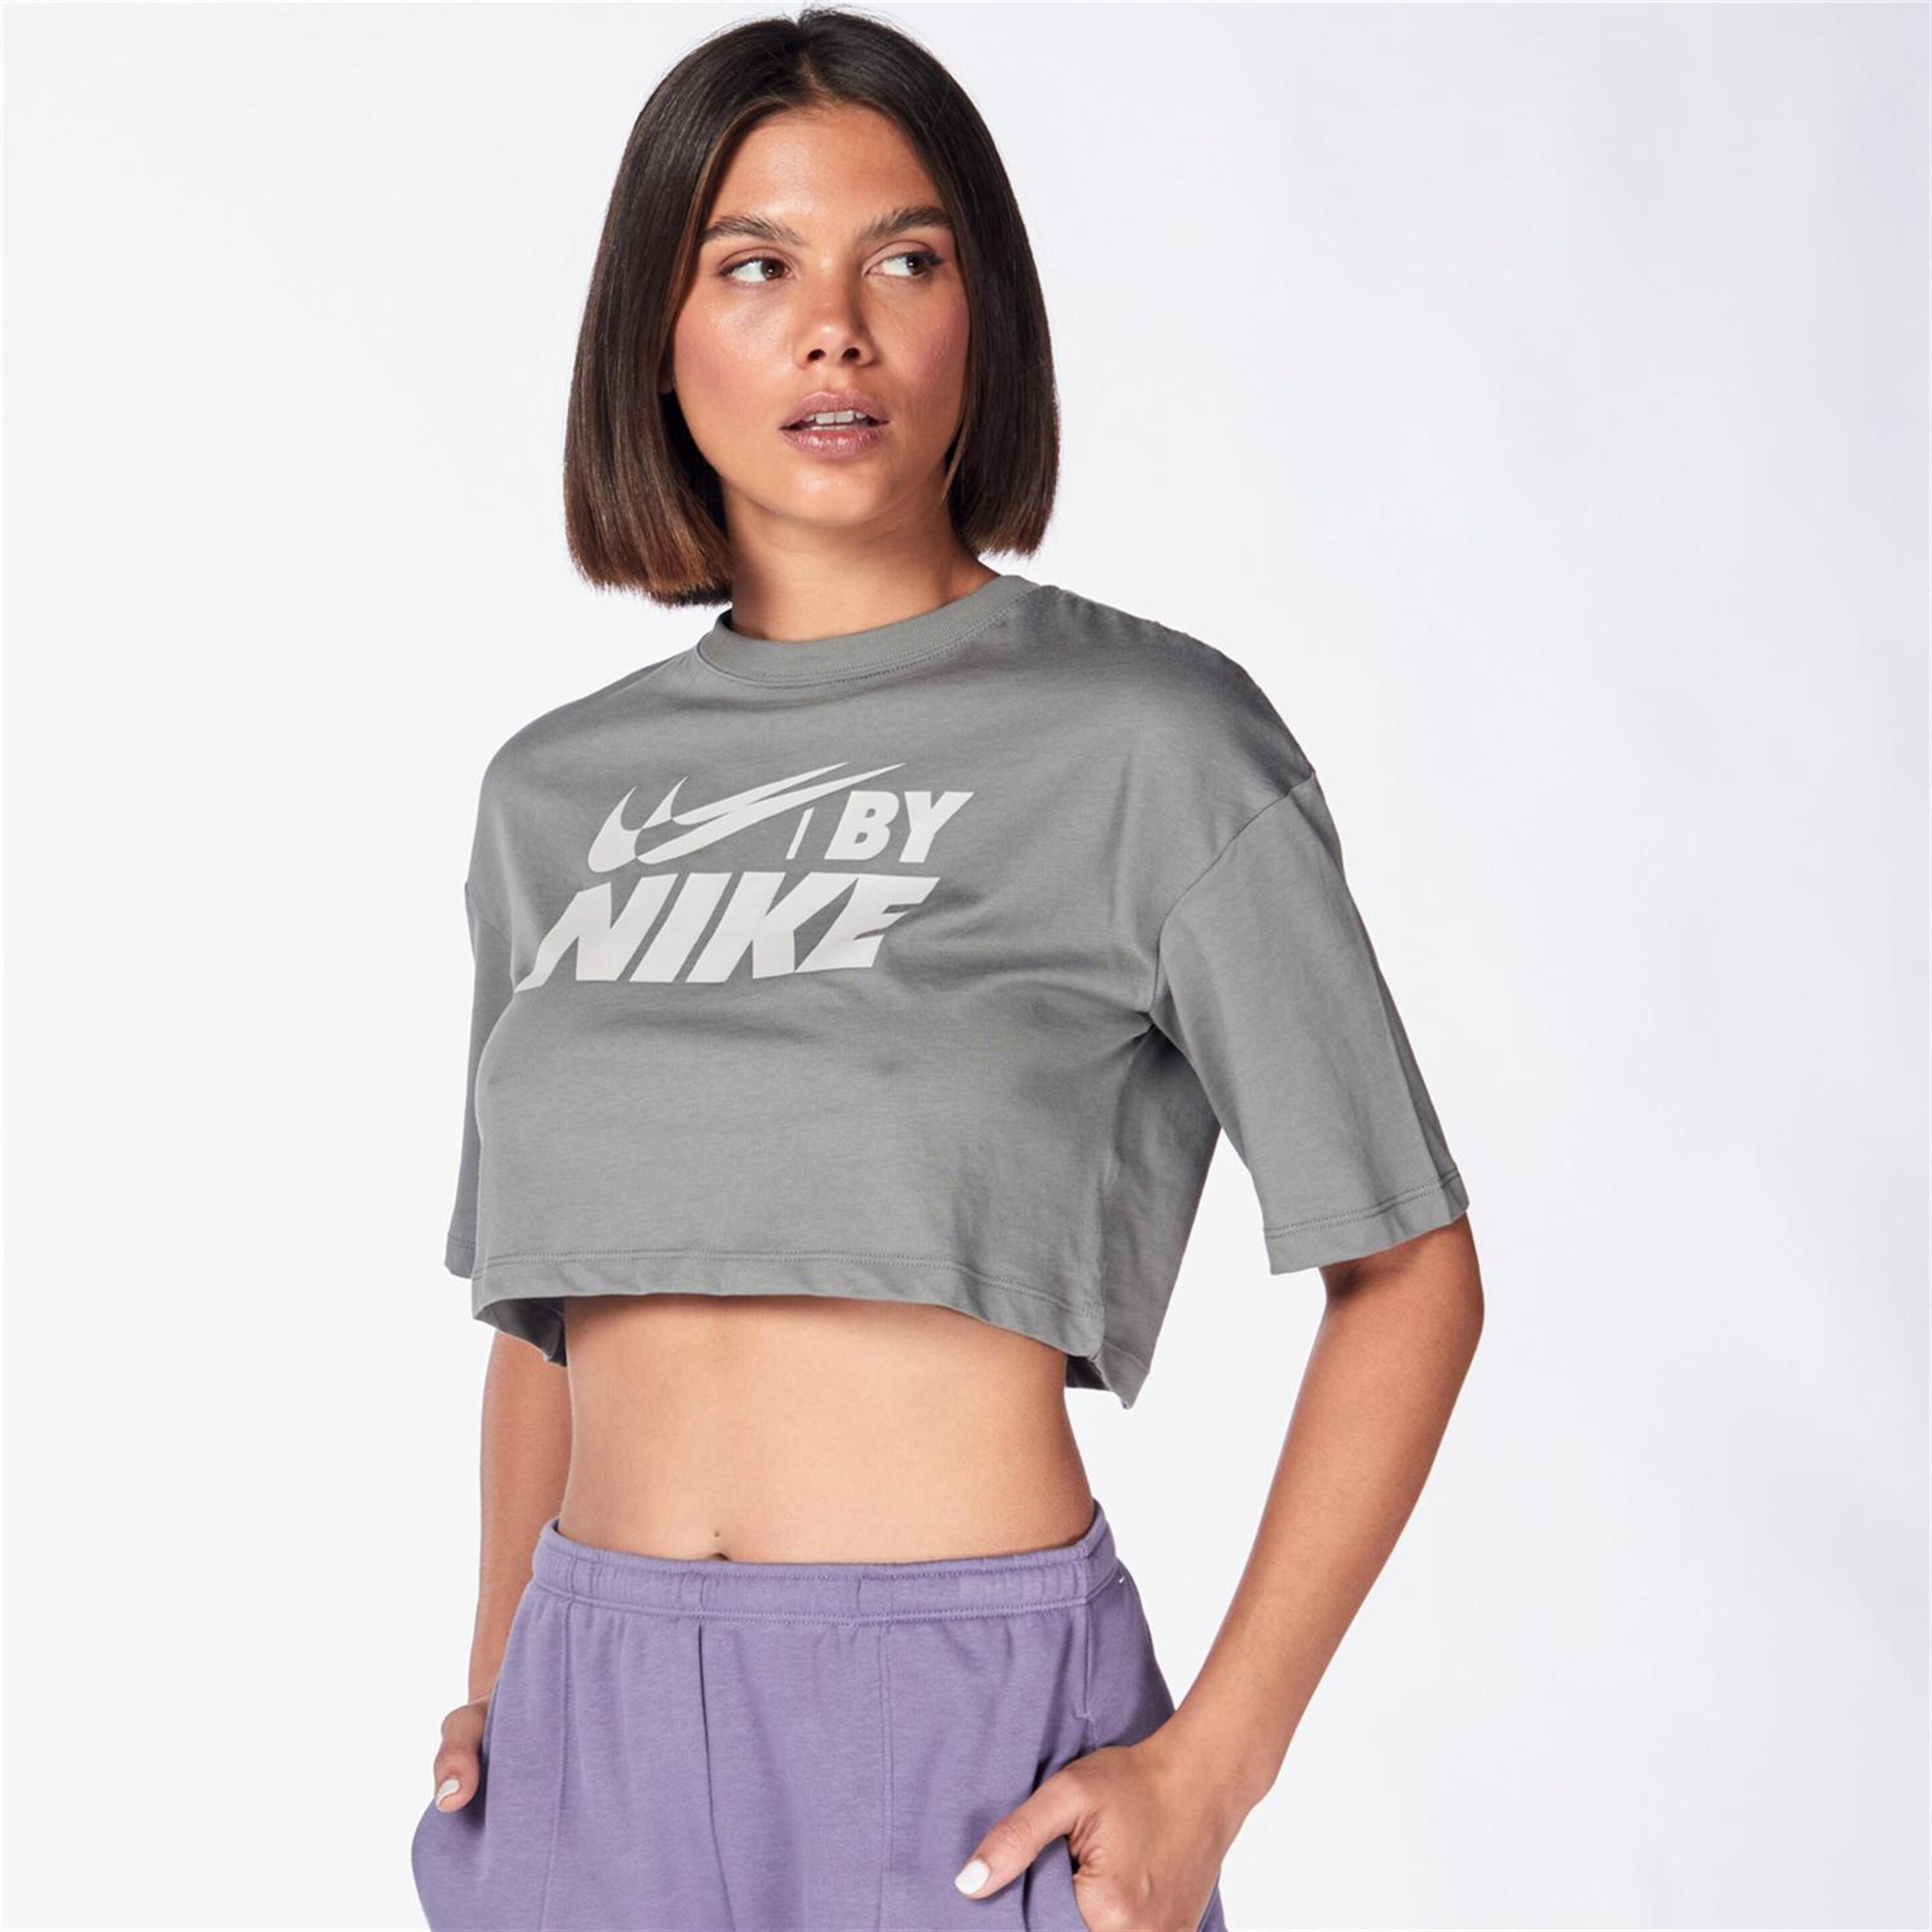 Camiseta Nike - gris - Camiseta Boxy Mujer